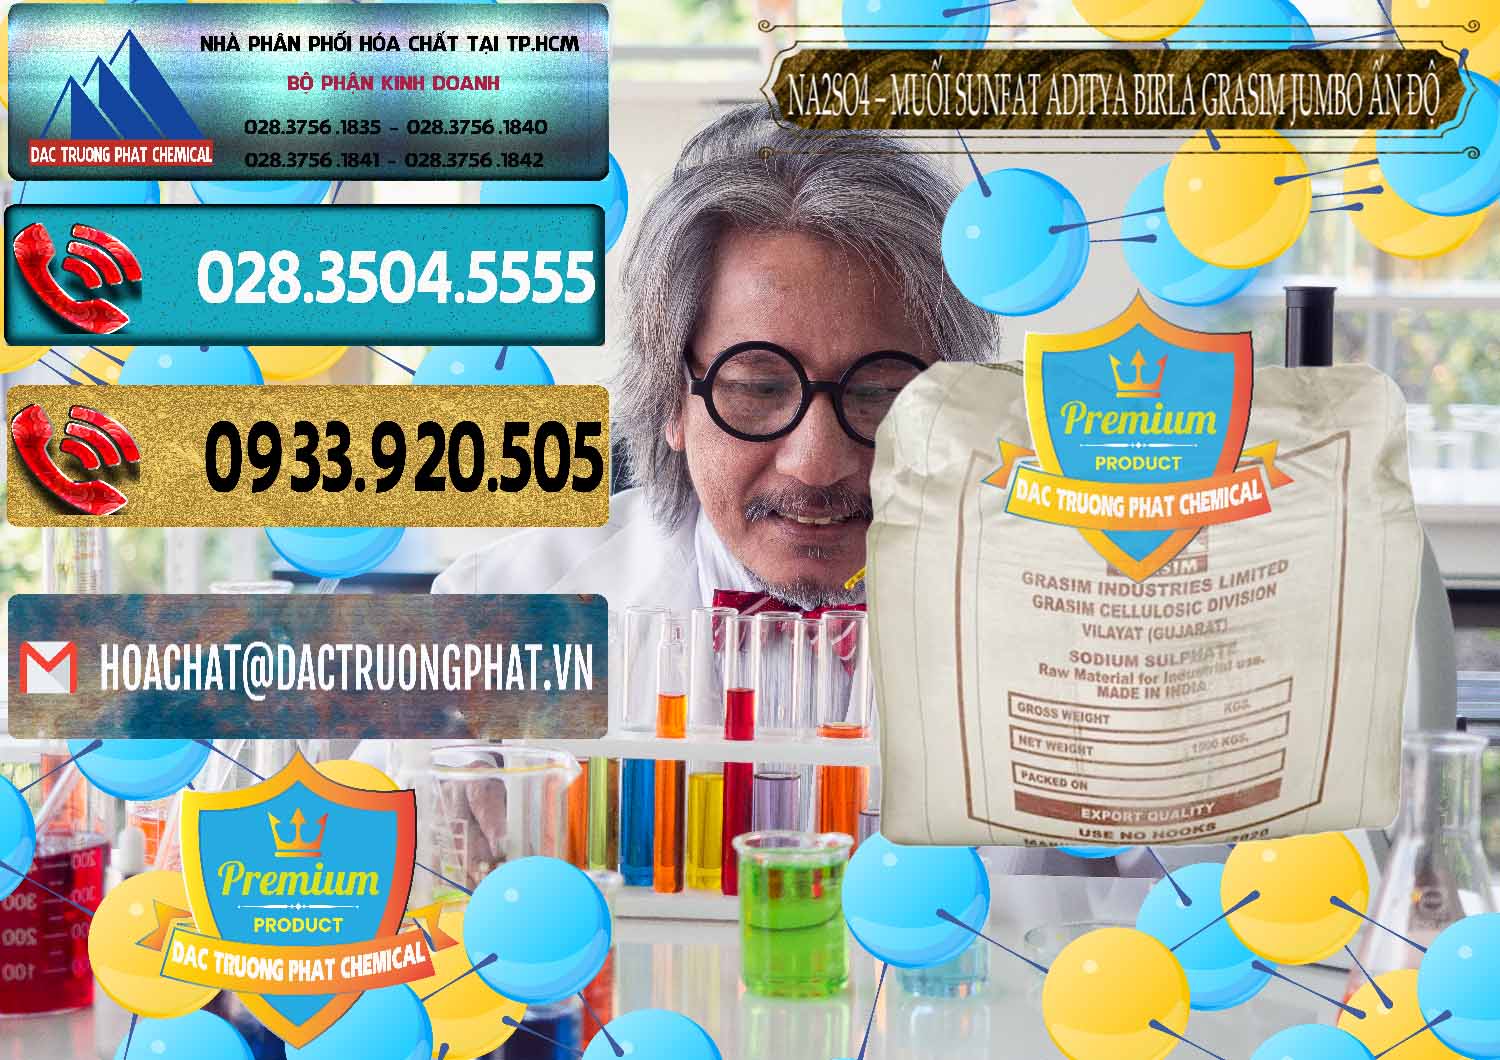 Chuyên phân phối _ bán Sodium Sulphate - Muối Sunfat Na2SO4 Jumbo Bành Aditya Birla Grasim Ấn Độ India - 0357 - Đơn vị cung cấp ( phân phối ) hóa chất tại TP.HCM - hoachatdetnhuom.com